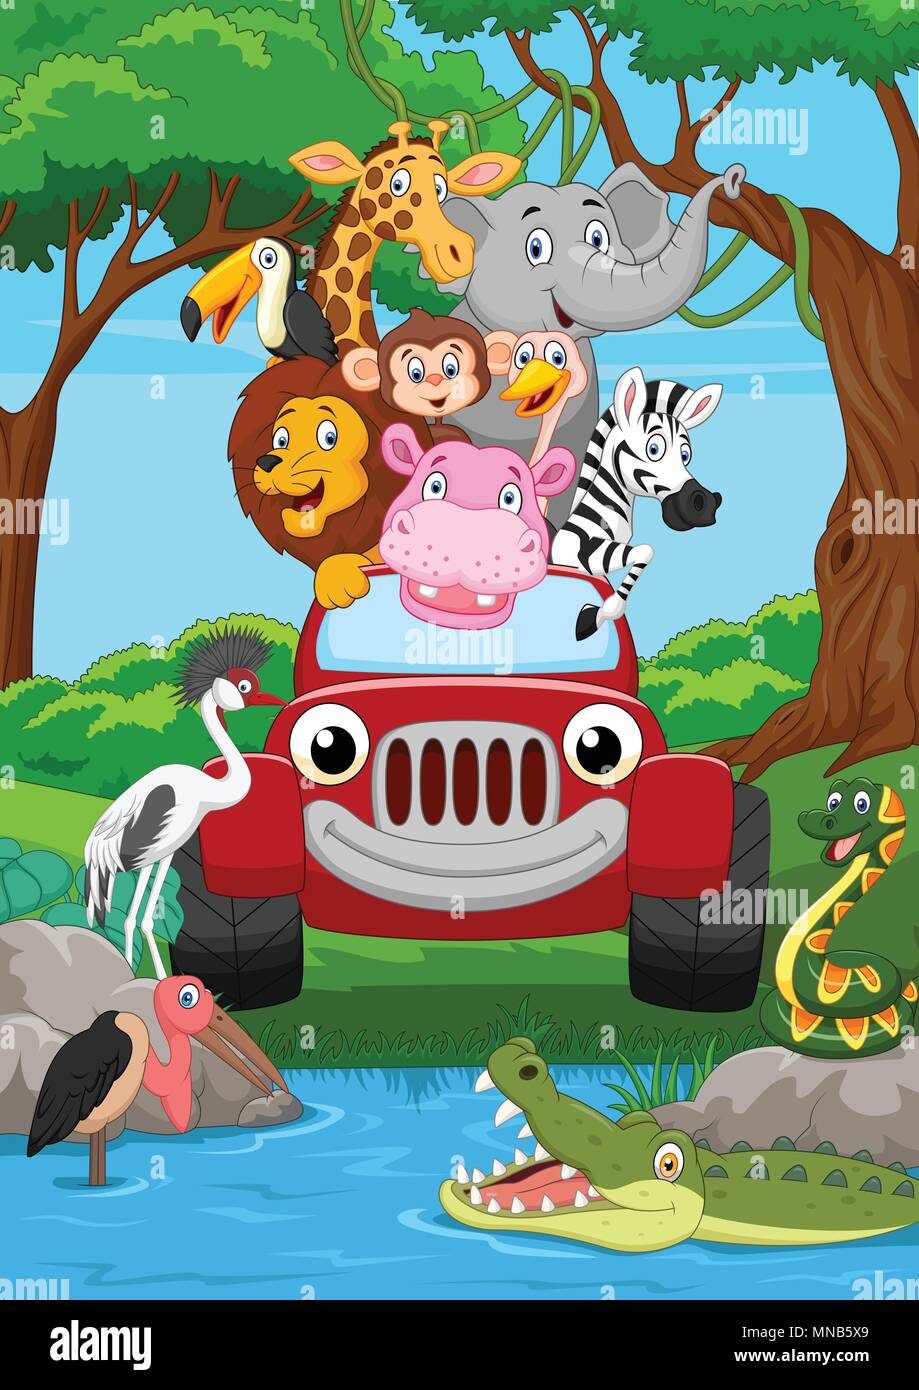 Cartoon animal sauvage équitation une voiture rouge dans la jungle Illustration de Vecteur